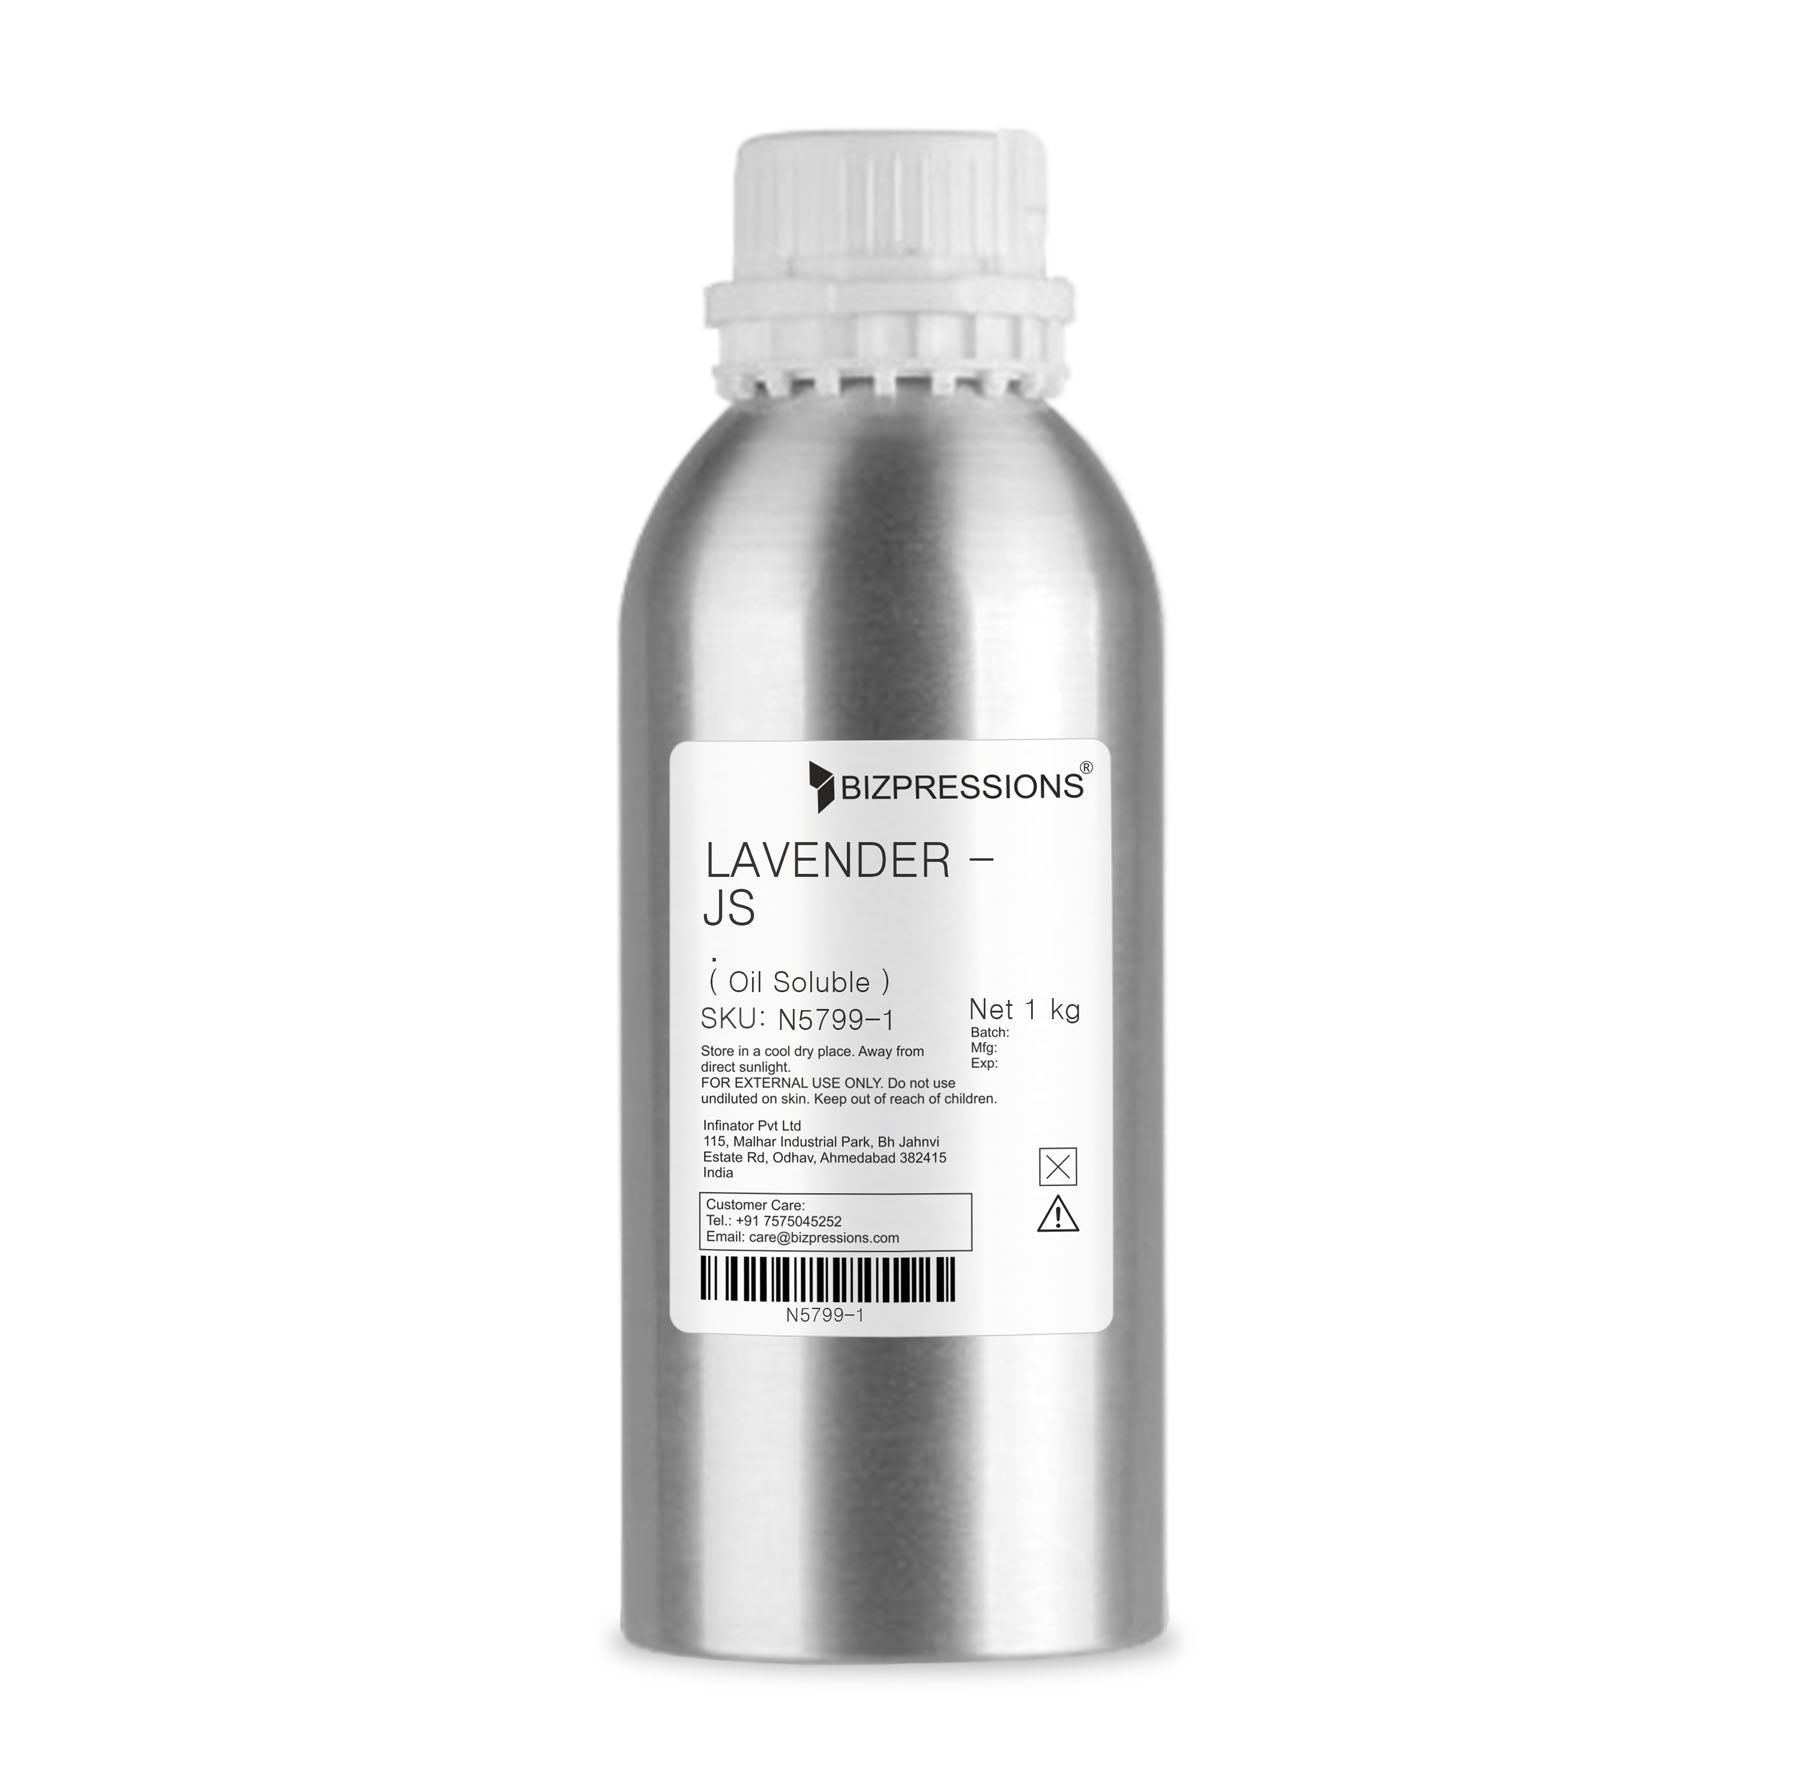 LAVENDER - JS - Fragrance ( Oil Soluble ) - 1 kg